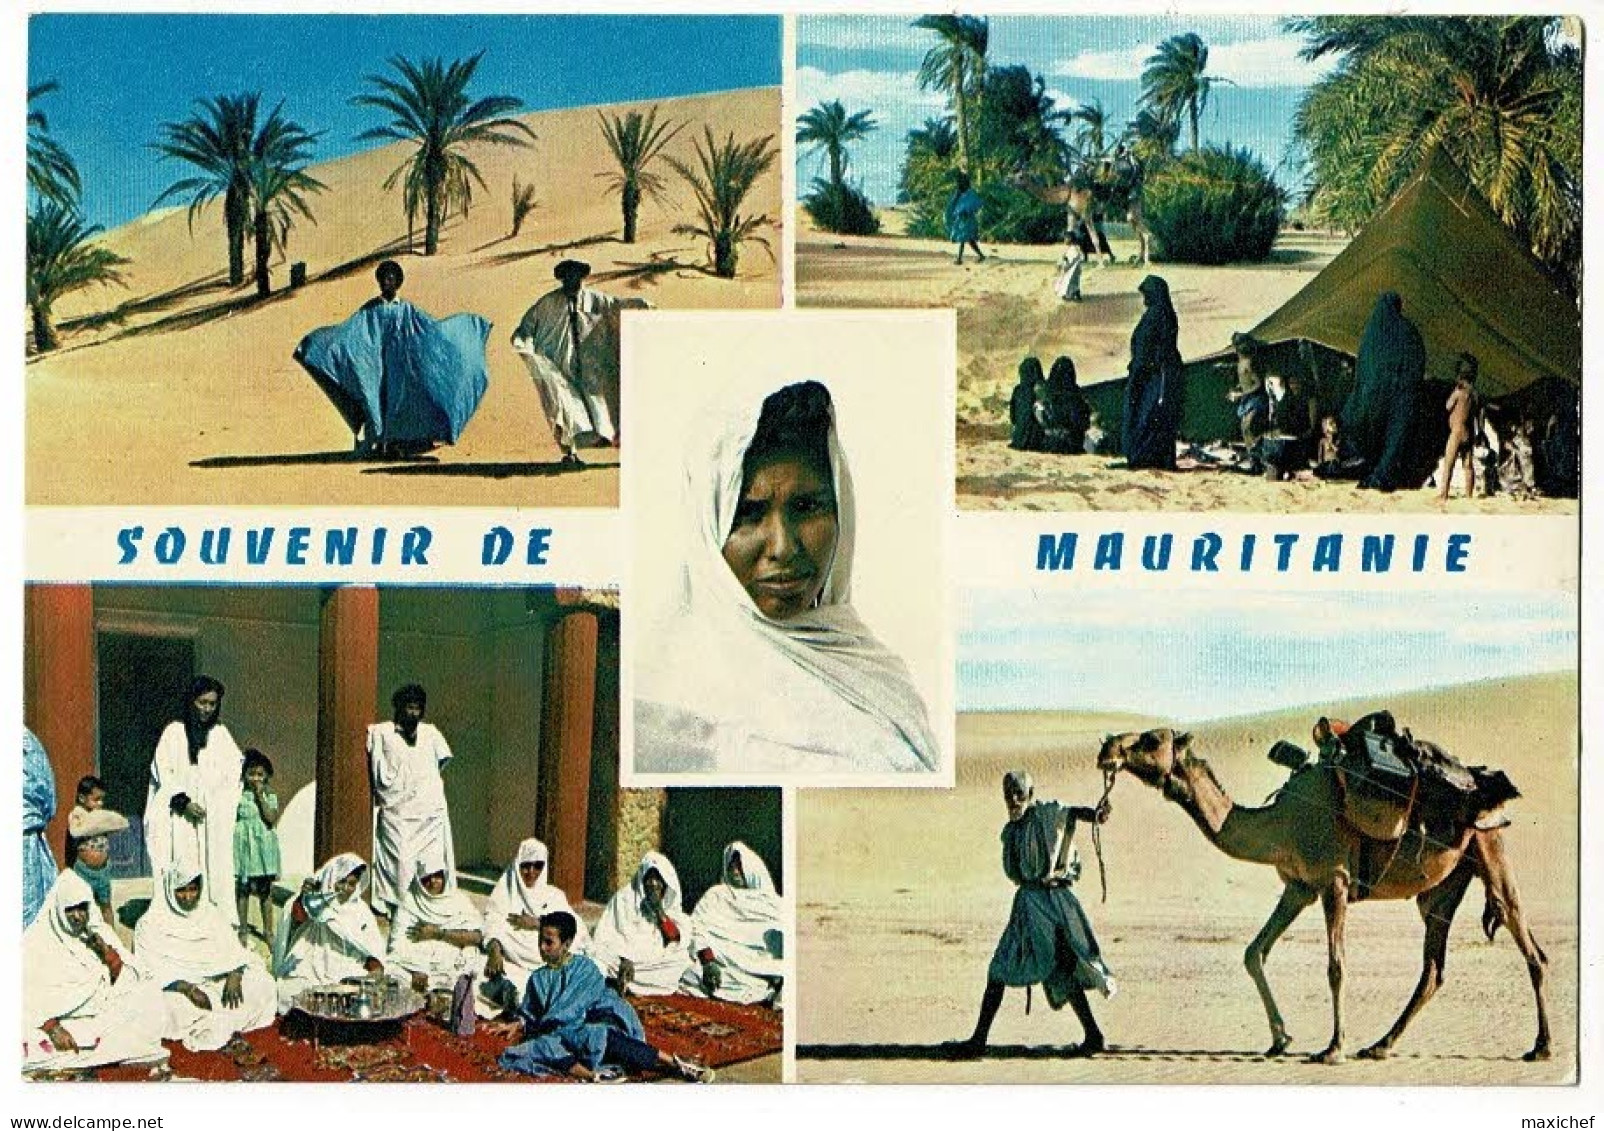 Souvenir De Mauritanie - Dunes De Sable, La Vie Sous La Tente, L'heure Du Thé, Chamelier Dans Les Dunes, Jeune Femme - Mauritanie